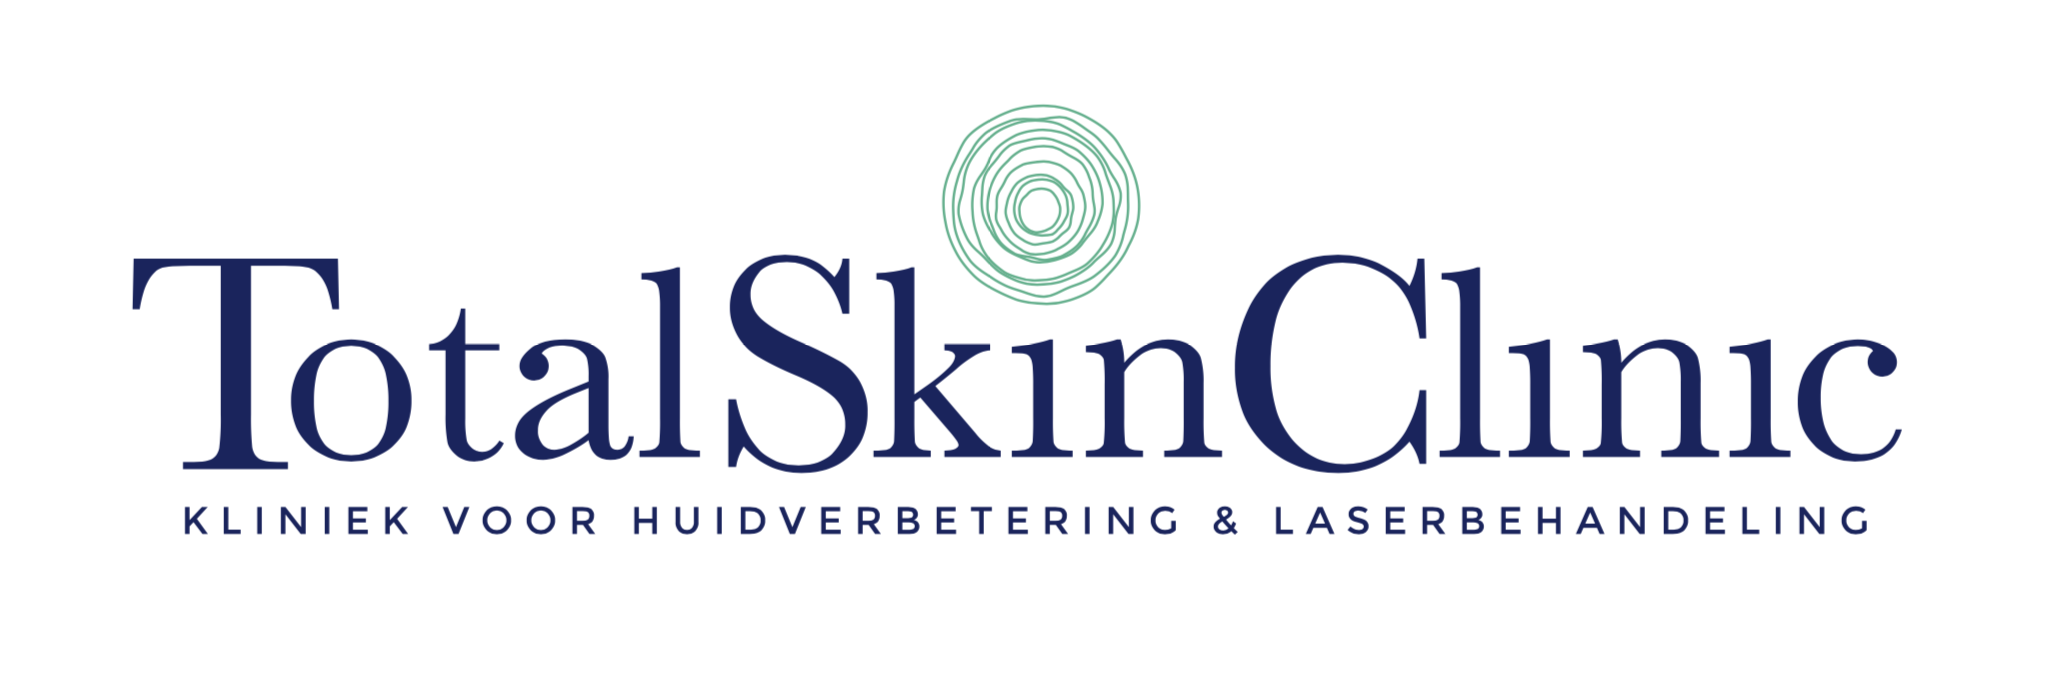 kliniek voor huidverbetering & laserbehandeling